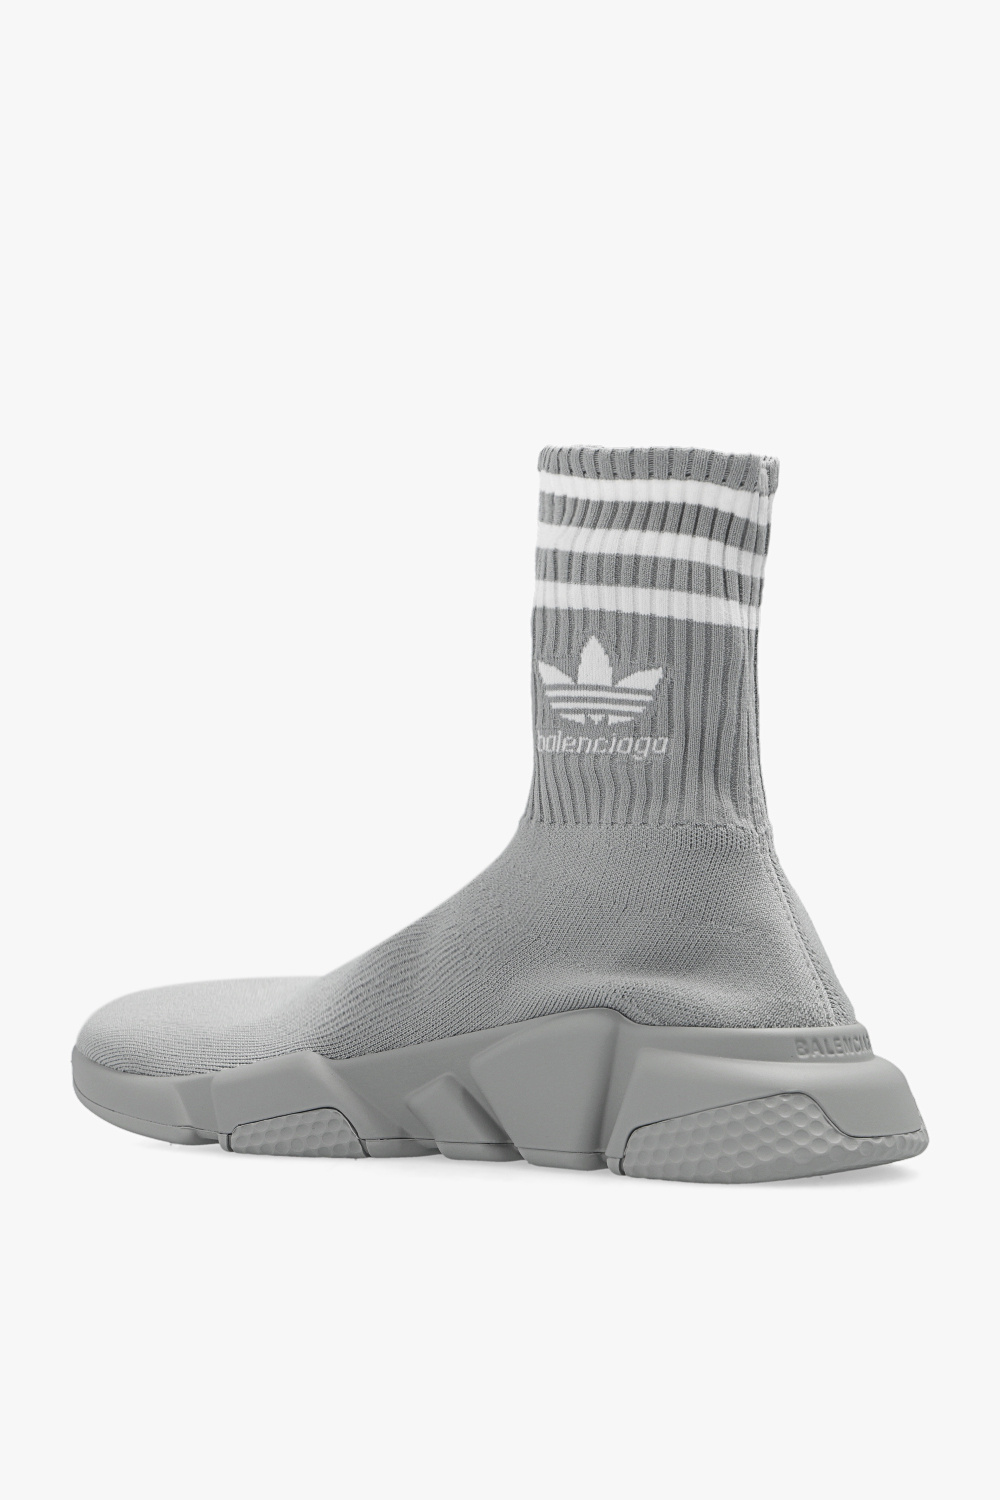 De-iceShops Ukraine - zapatillas de Adidas amortiguación minimalista apoyo talón talla 40 - Grey Balenciaga x ADIDAS Balenciaga